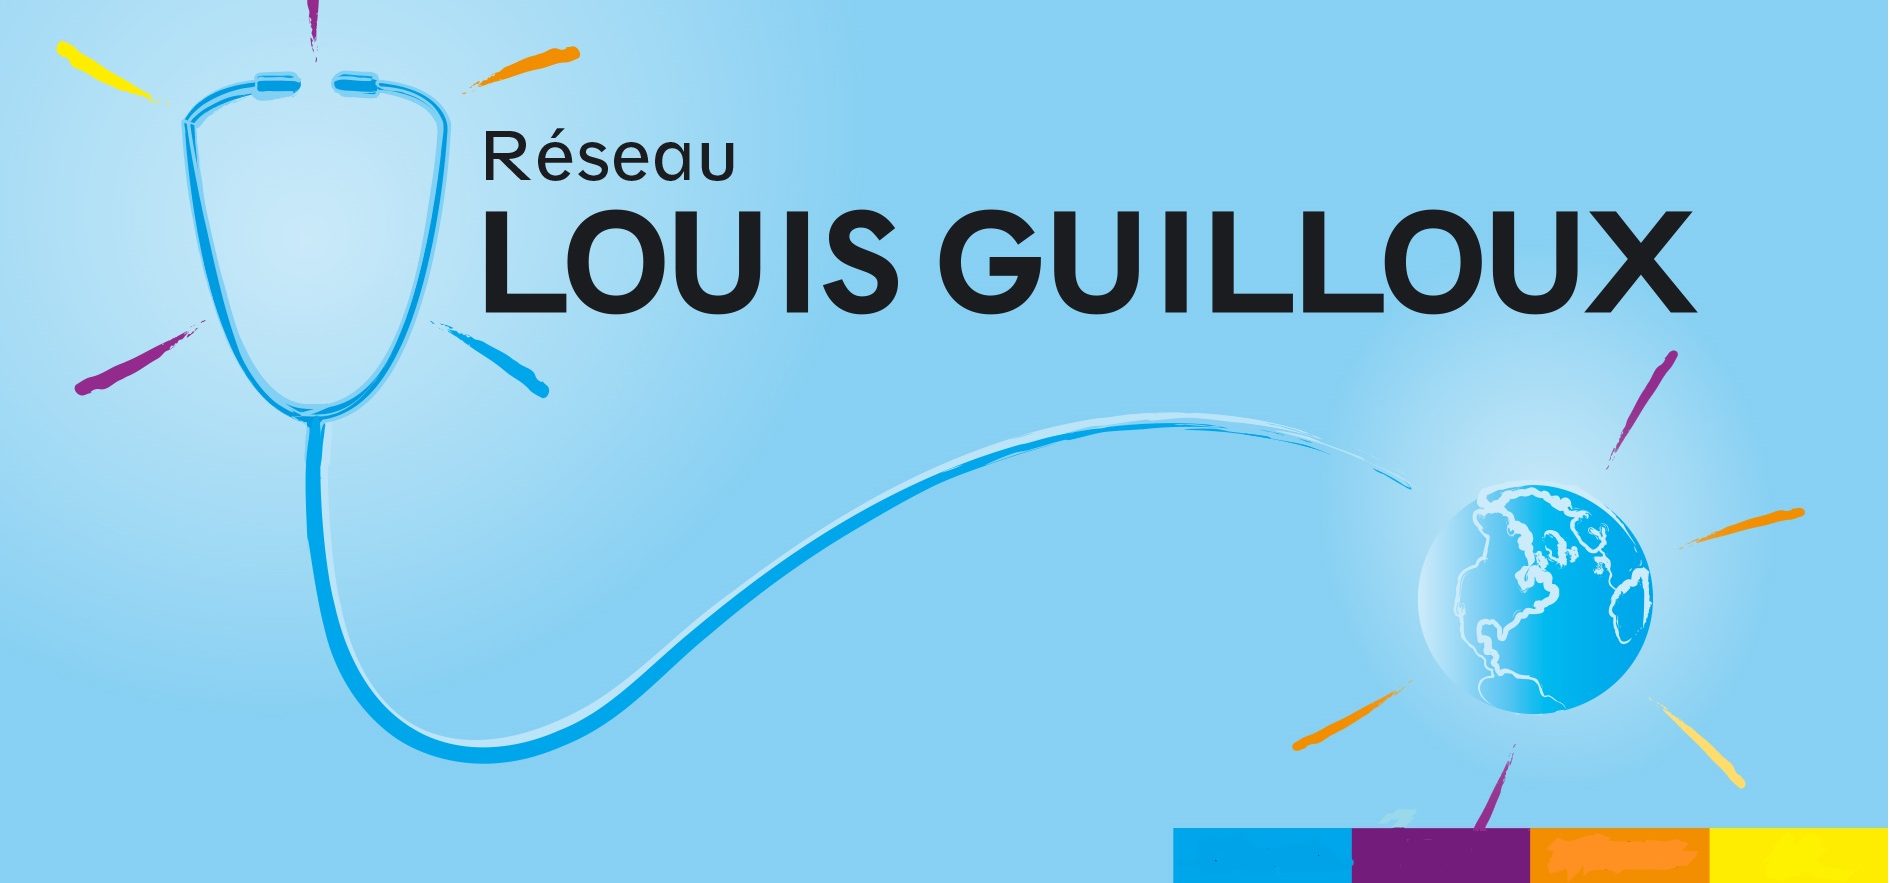 Le réseau Louis Guilloux